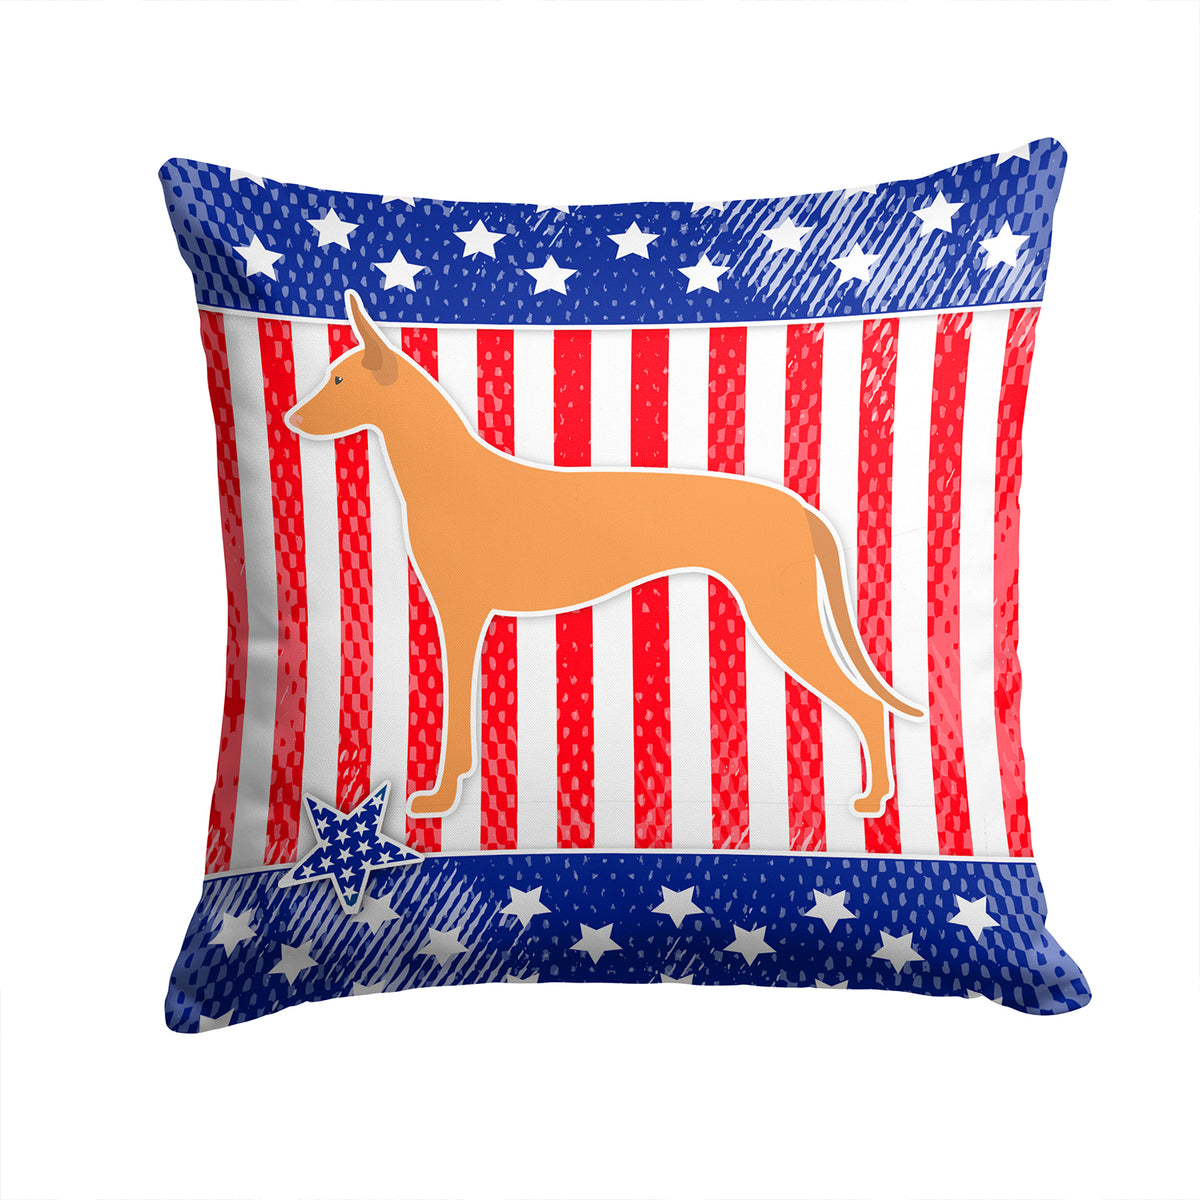 USA Patriotic Pharaoh Hound Fabric Decorative Pillow BB3288PW1414 - the-store.com